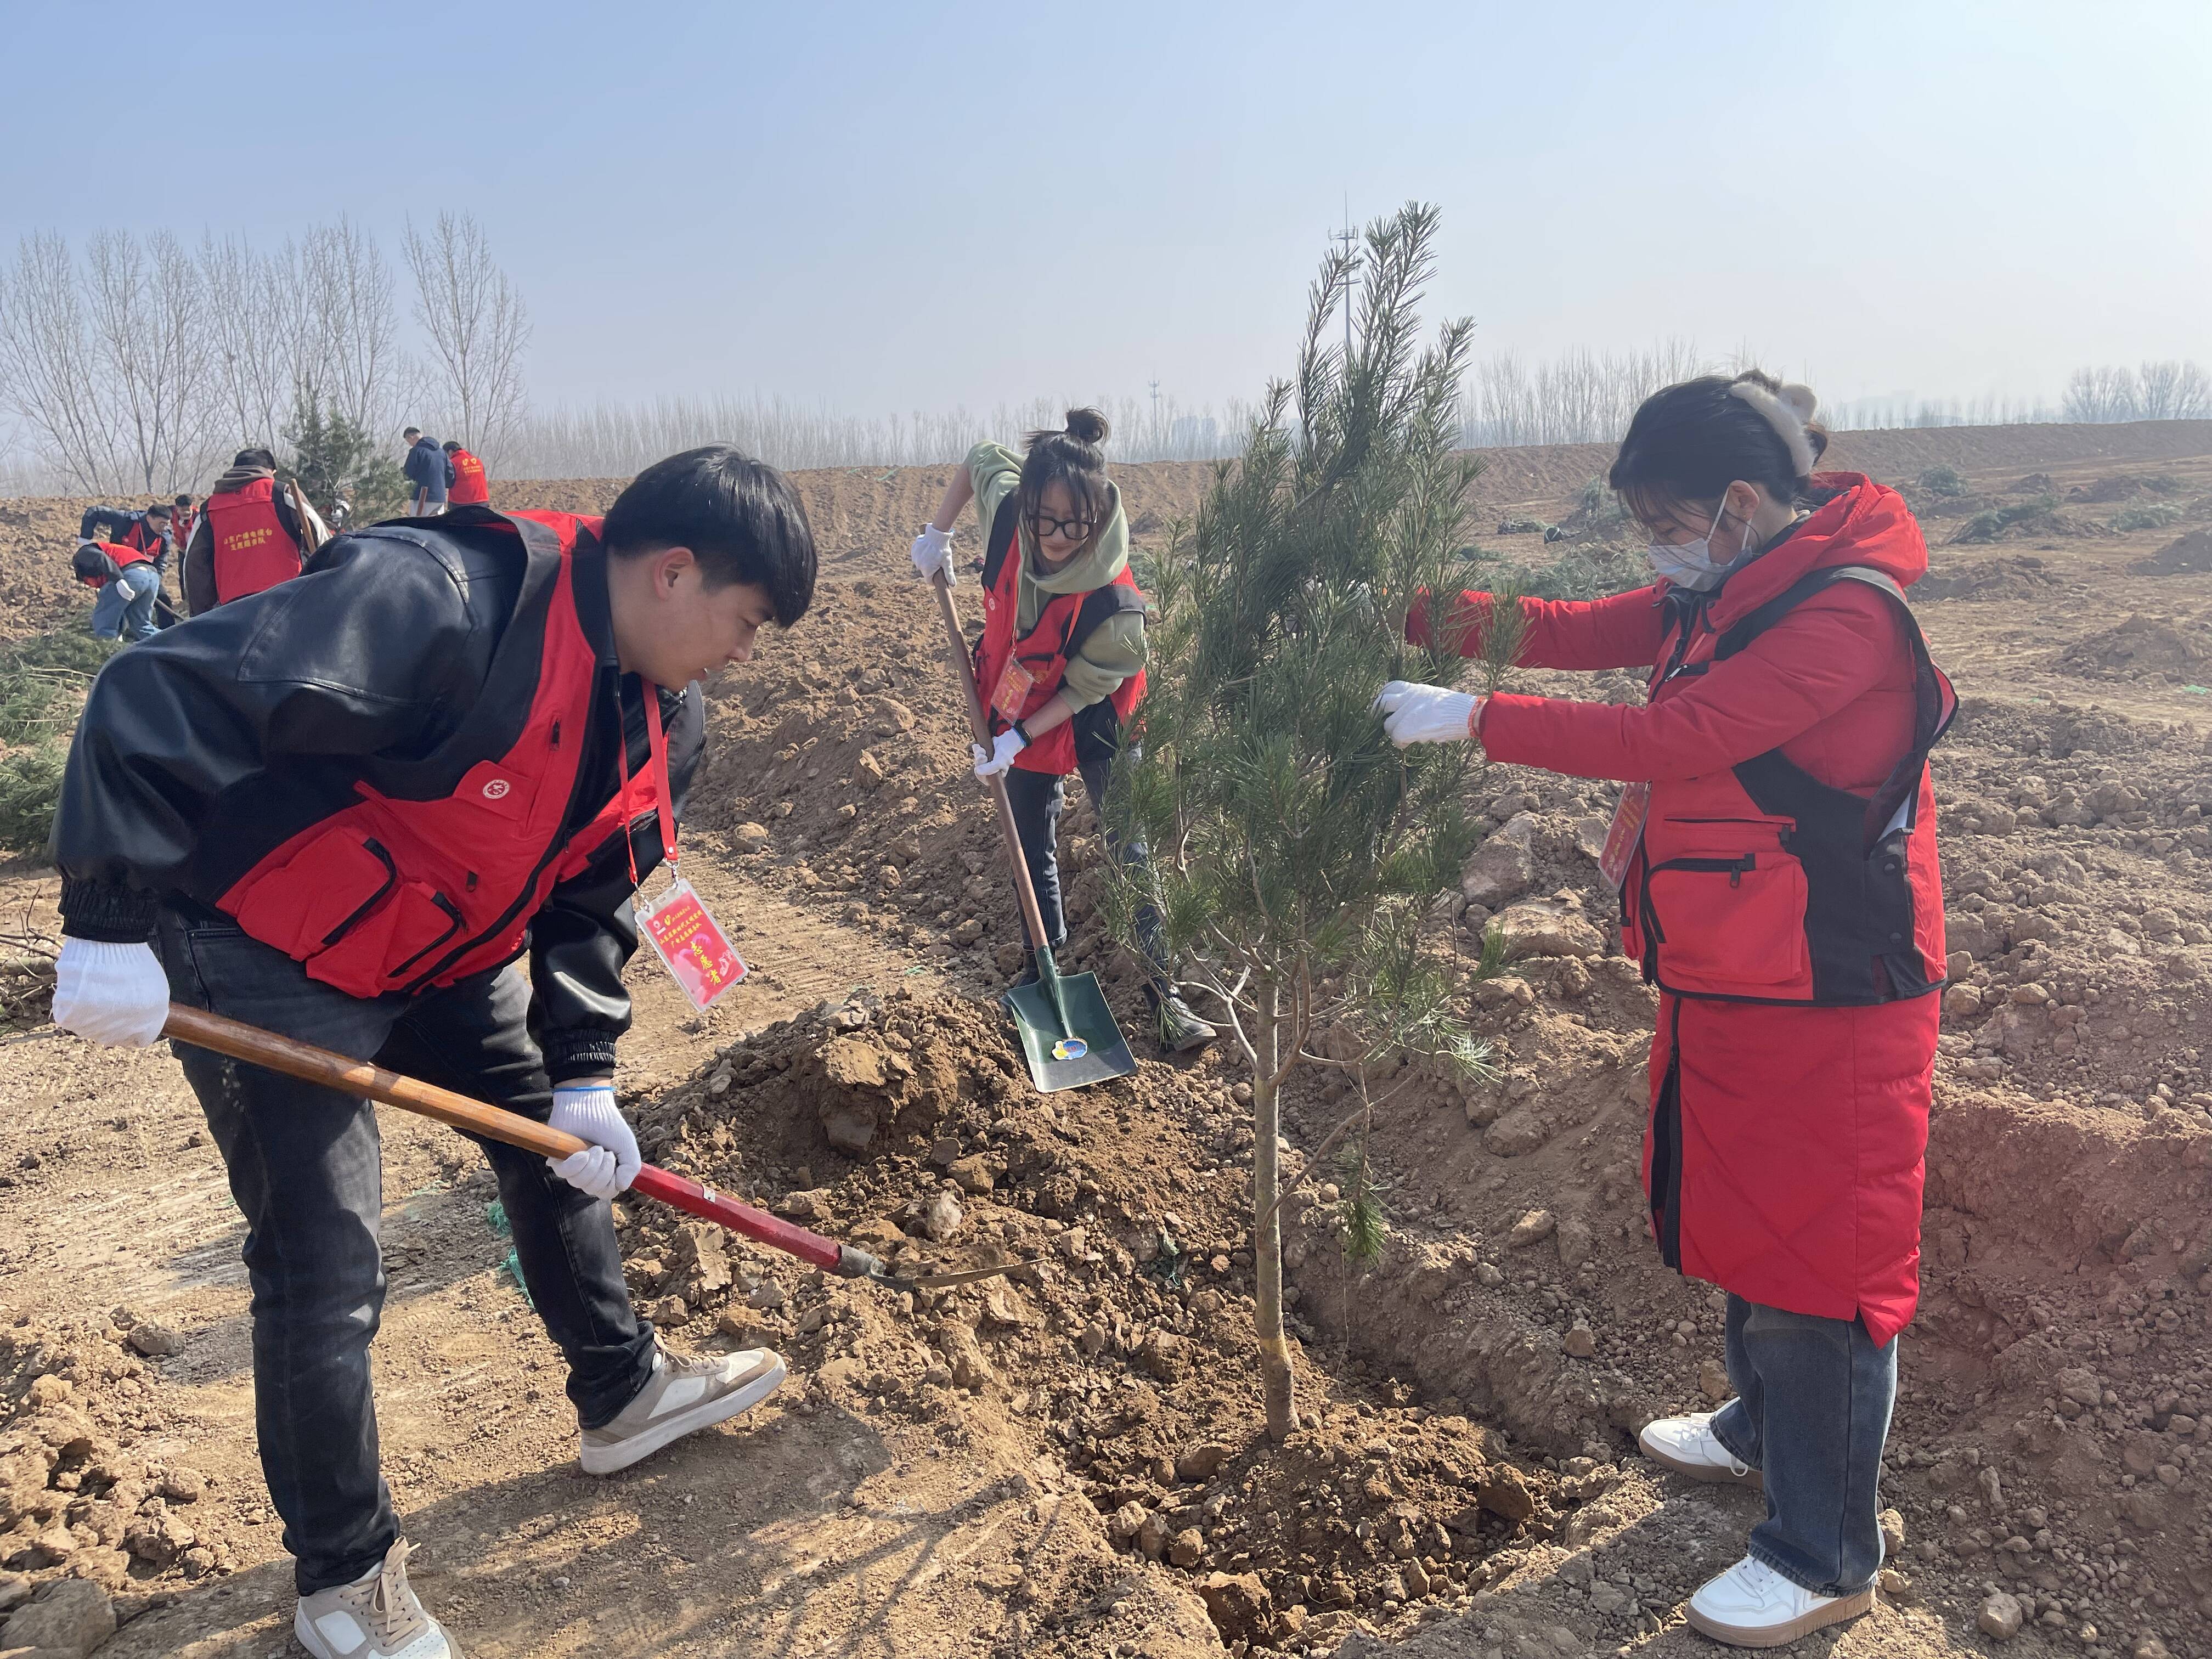 “守护生态黄河 共建美丽中国” 省直机关团员青年义务植树活动在济南举办